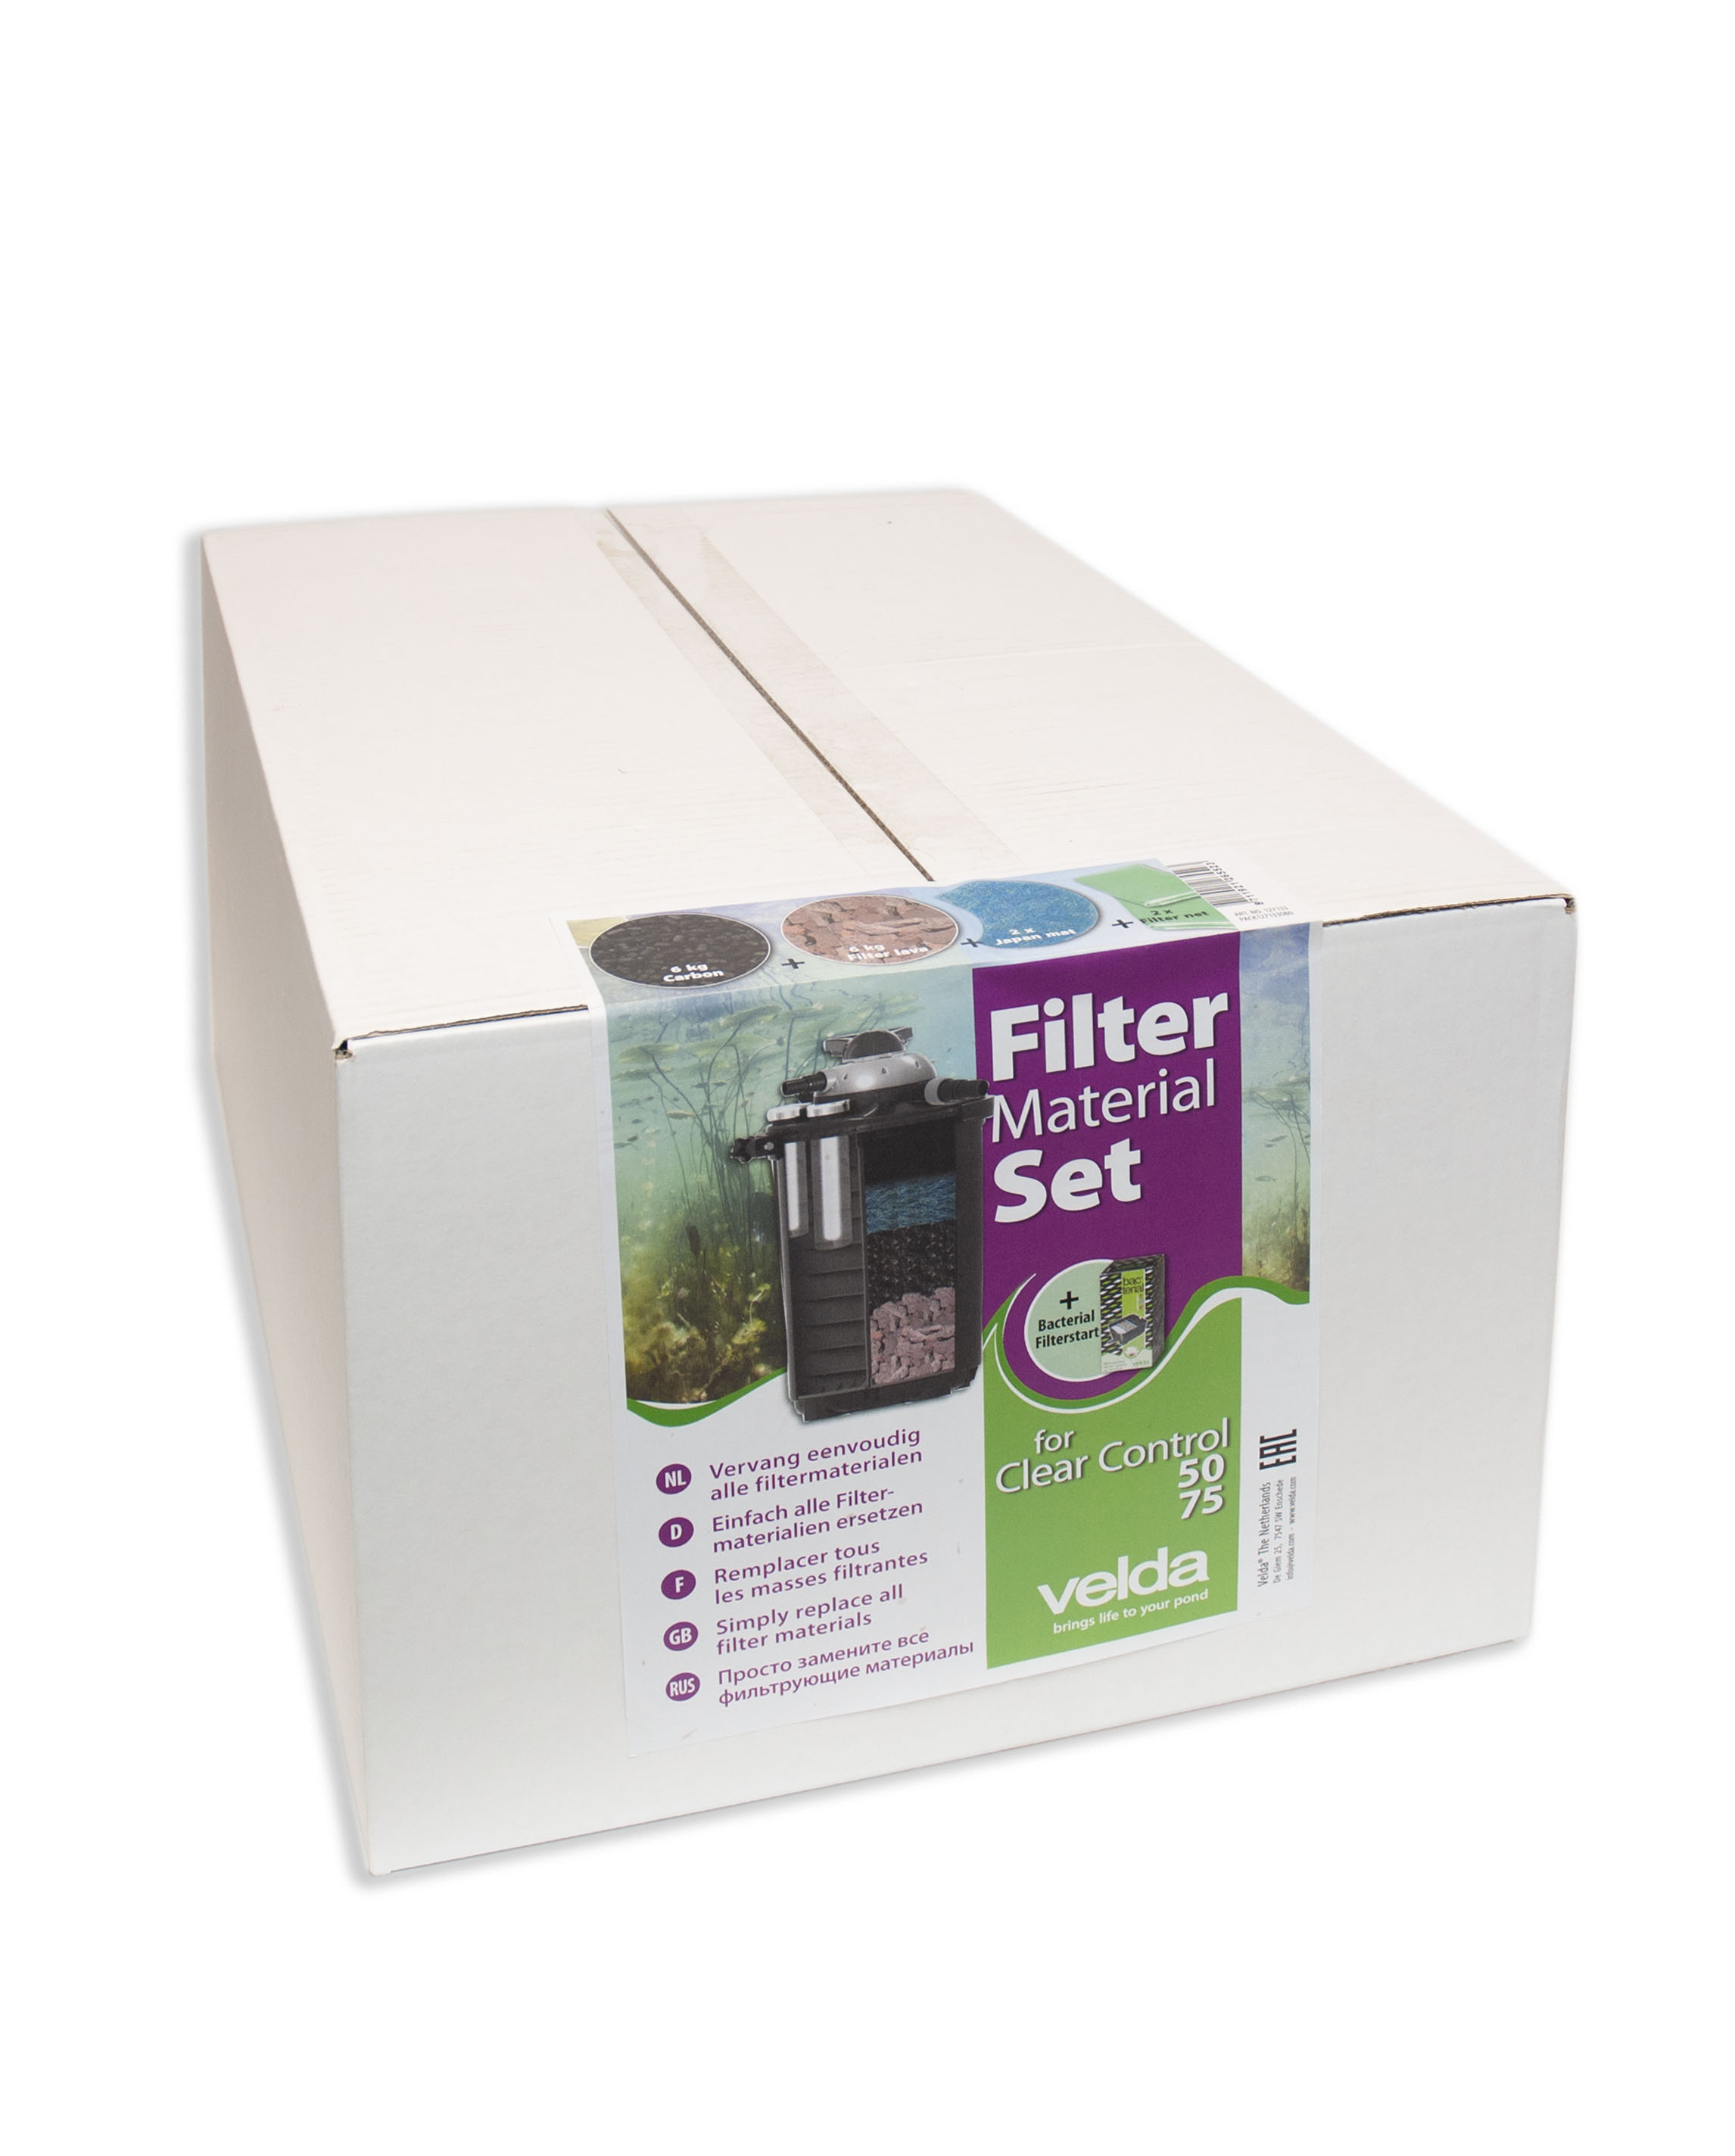 Filterpakket Clear Control 50/75